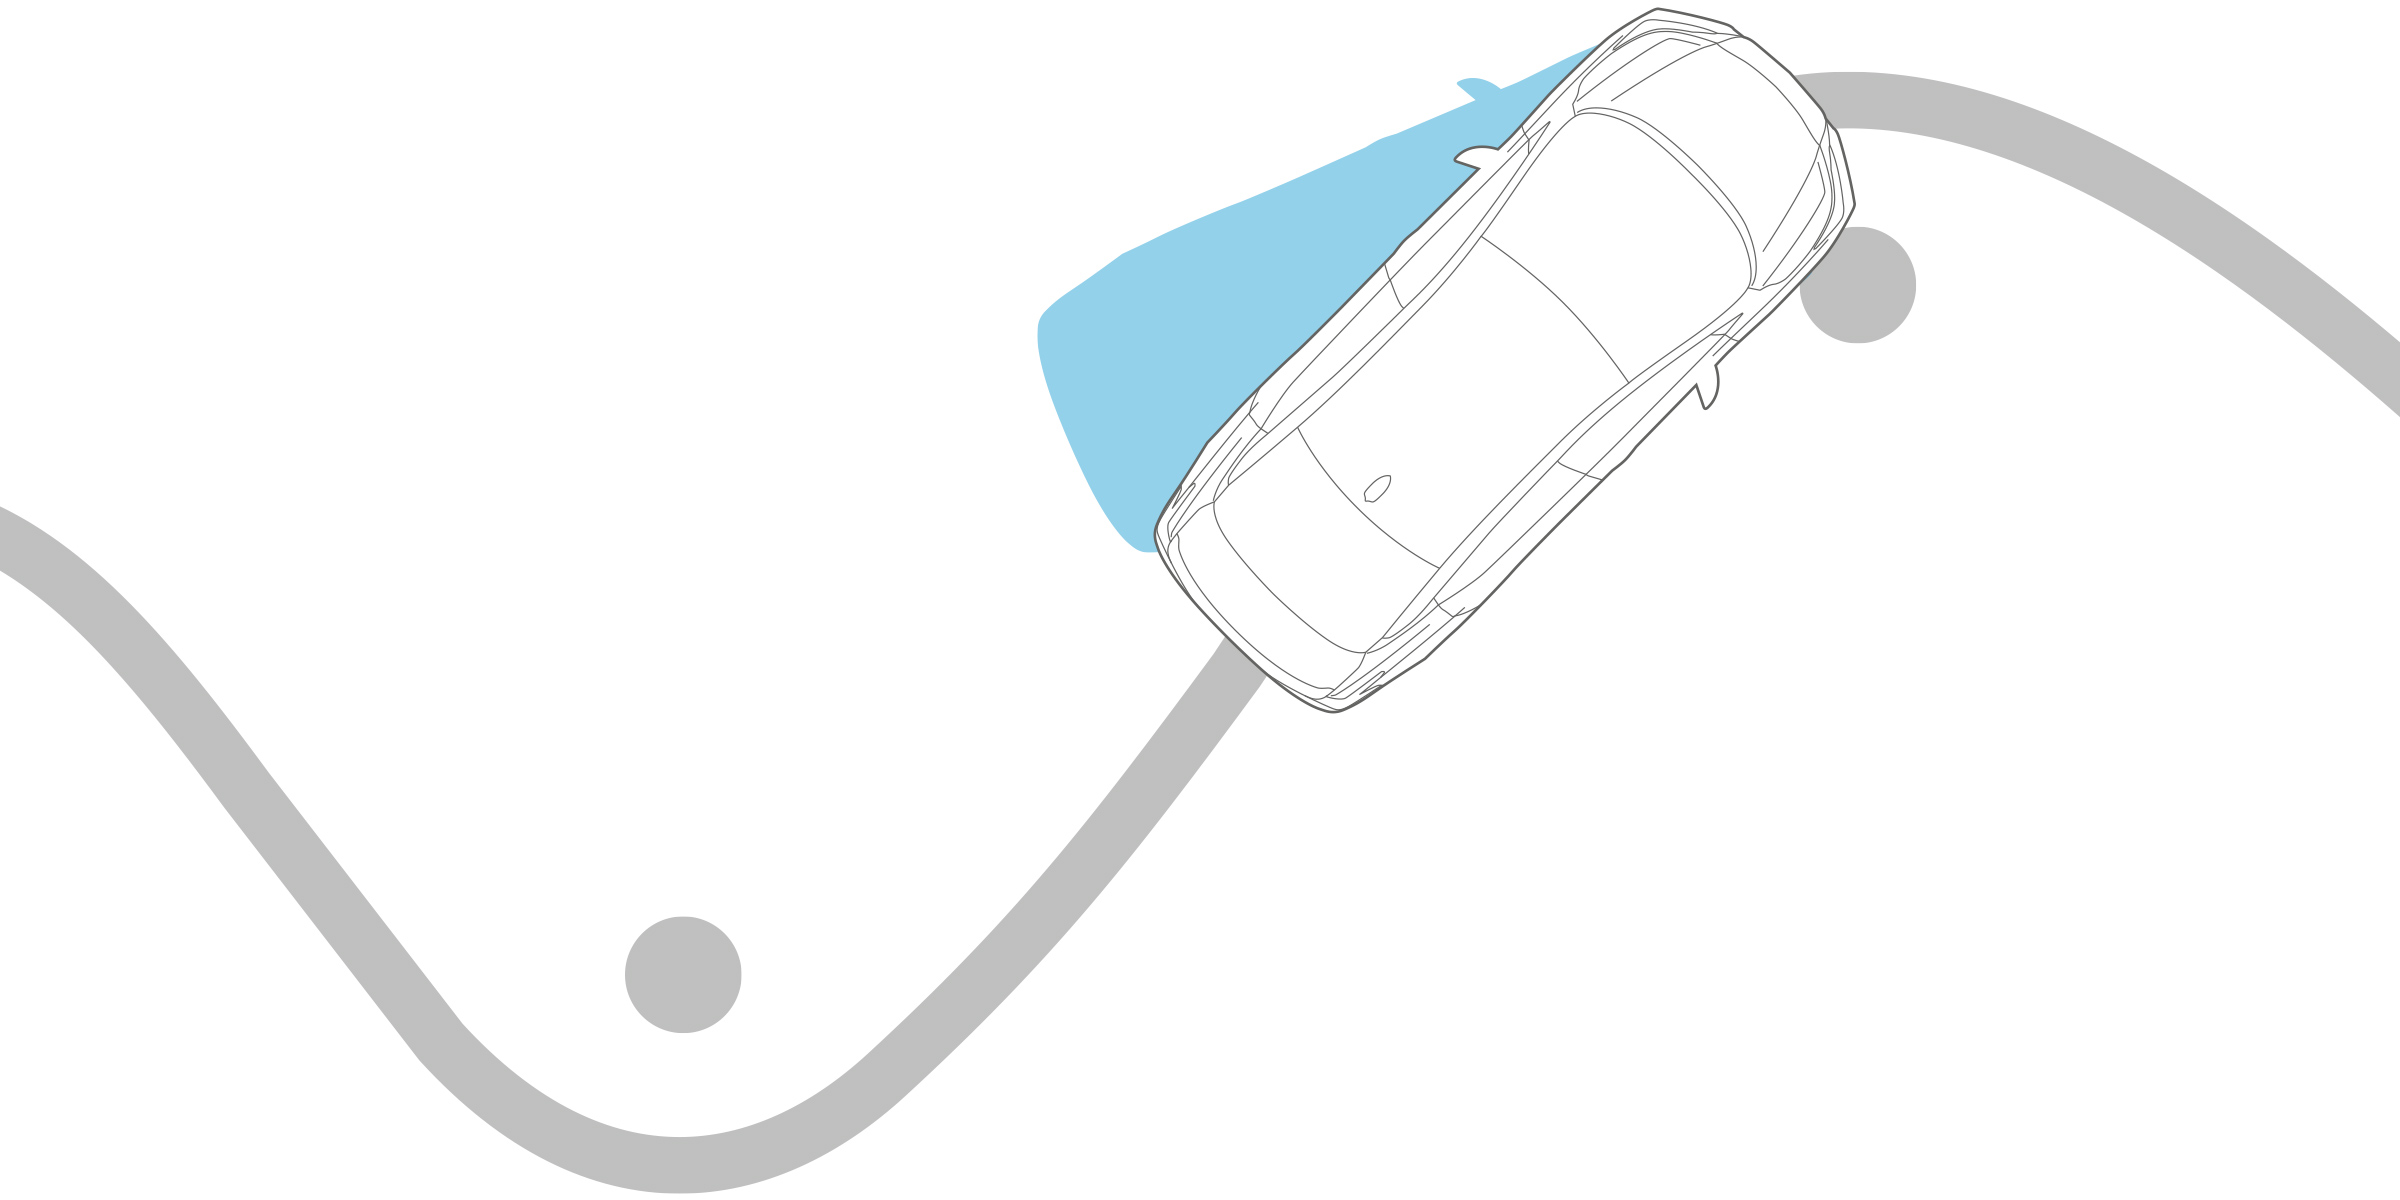 رسم توضيحي لنظام التحكم الديناميكي في سيارة نيسان صني